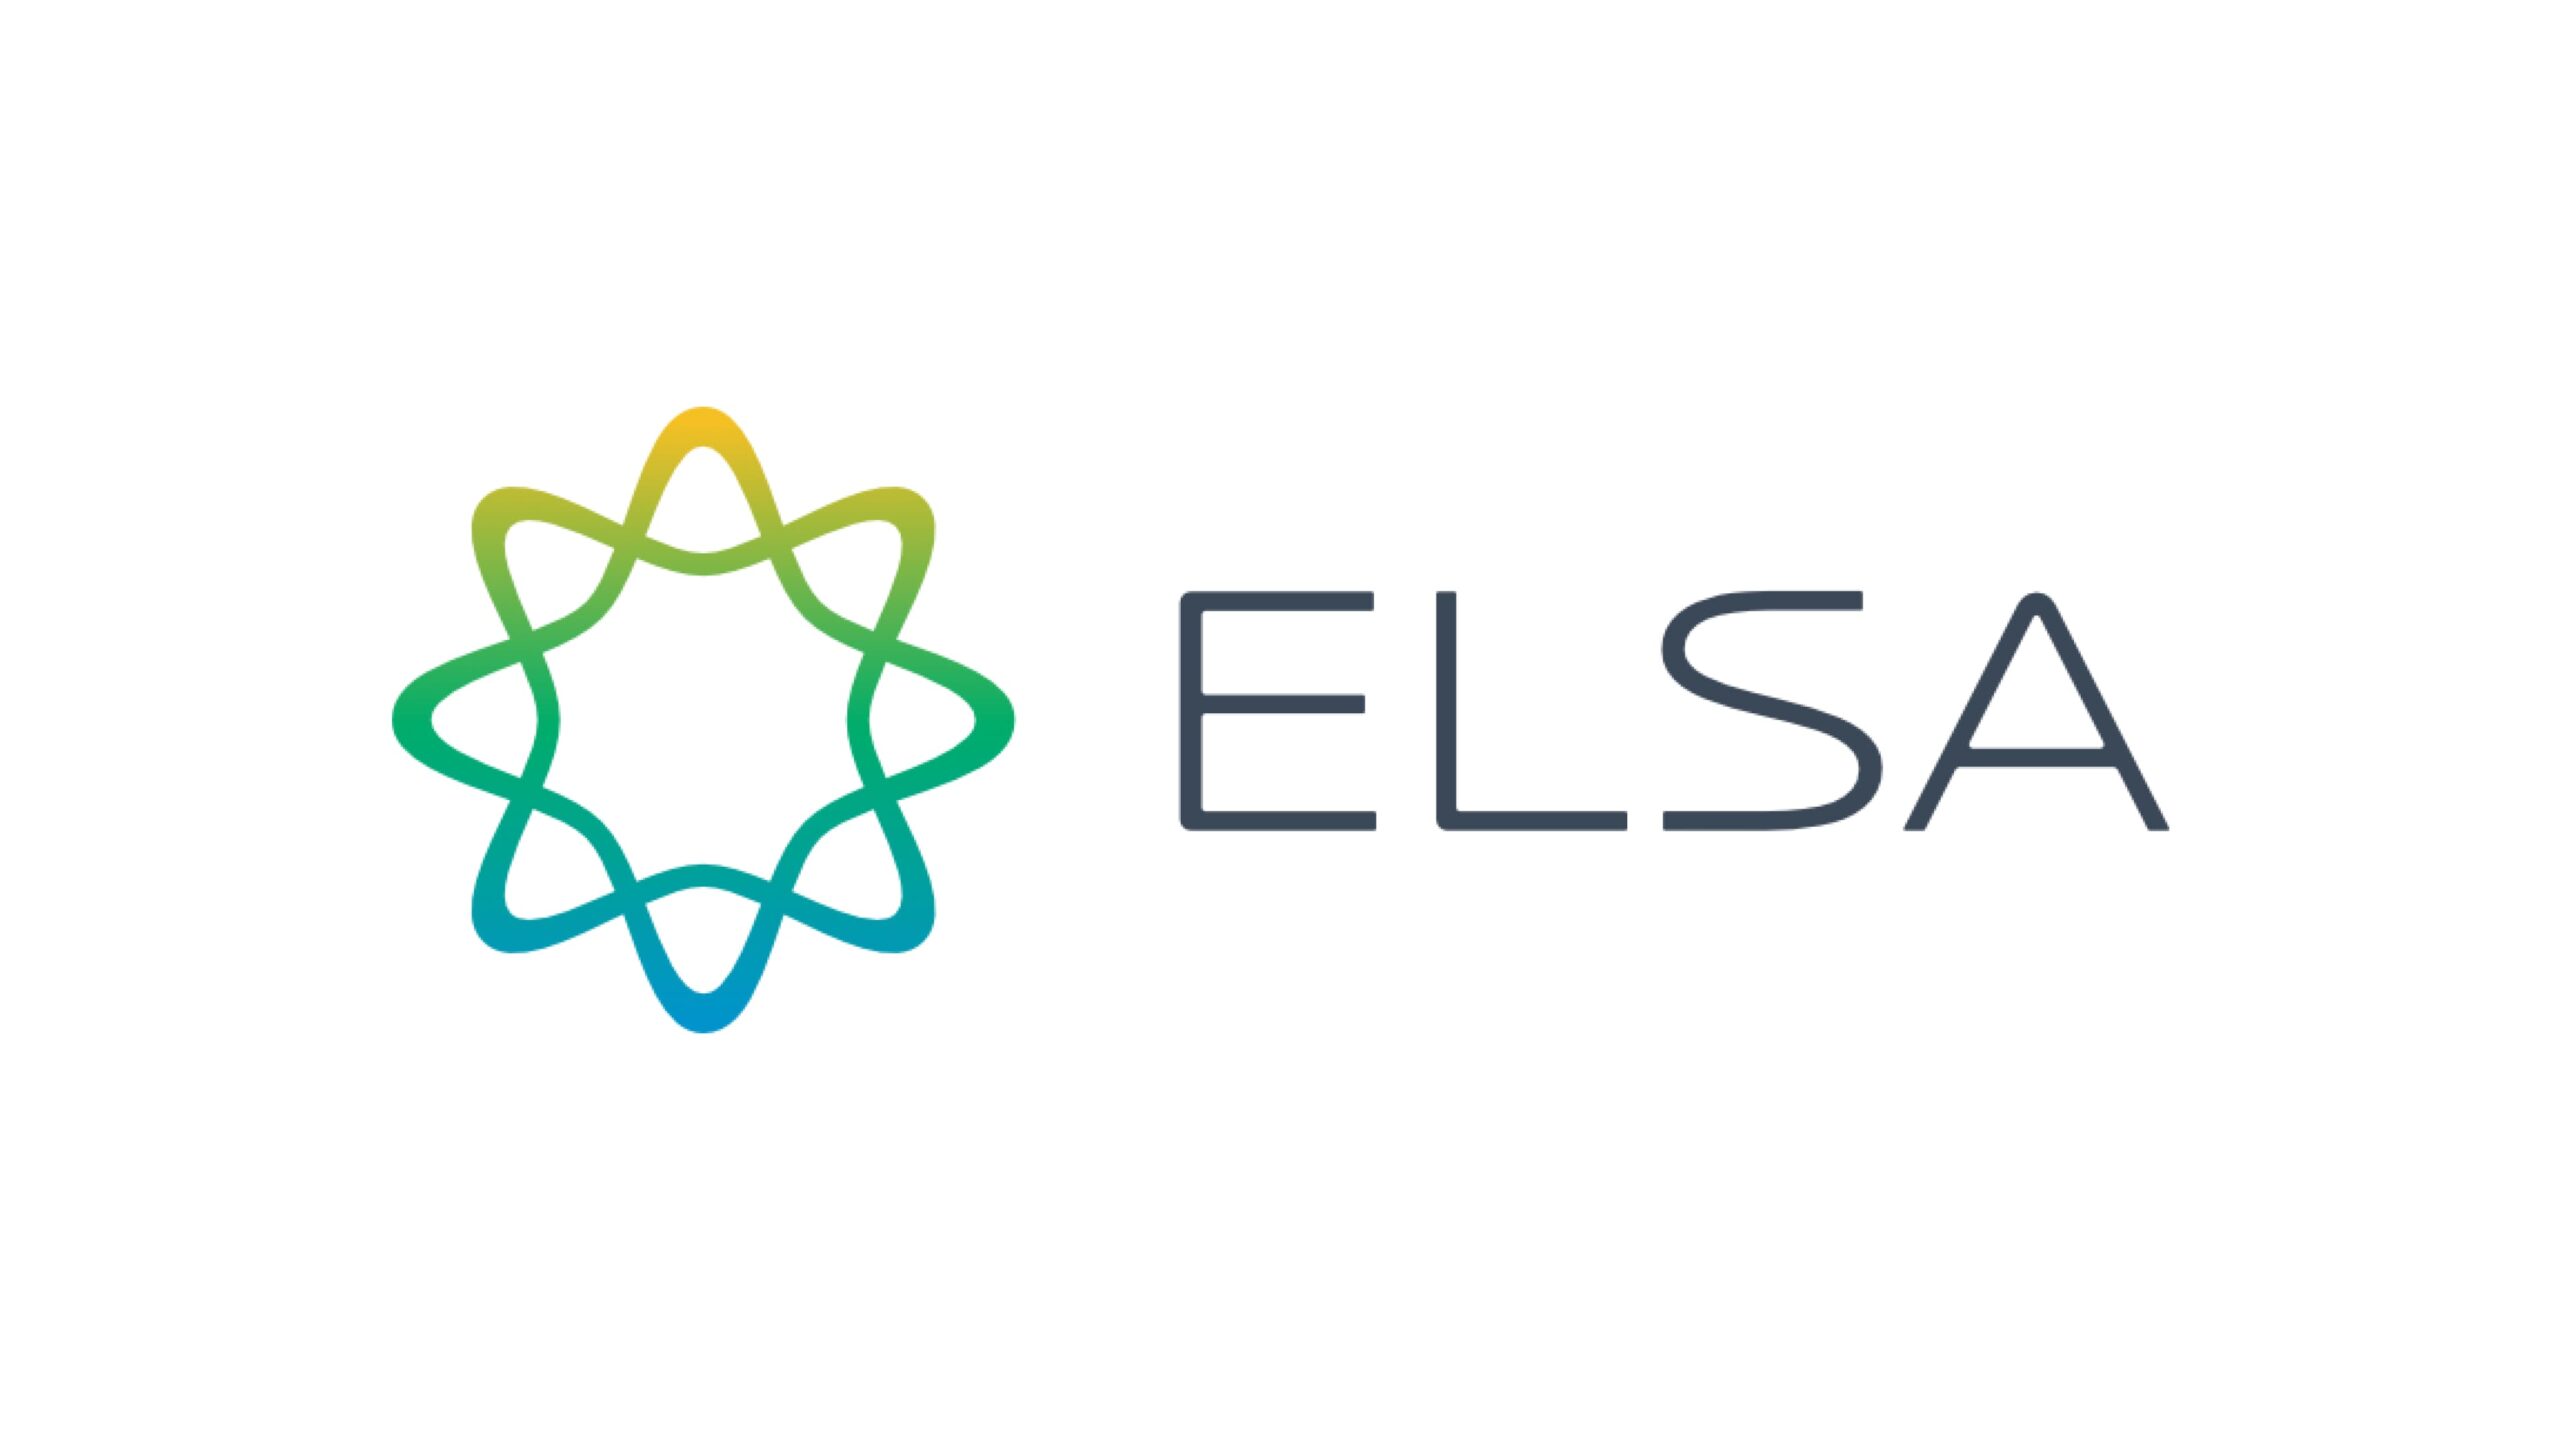 英語発音矯正アプリ「ELSA」がGoogleらから2,300万米ドルを調達